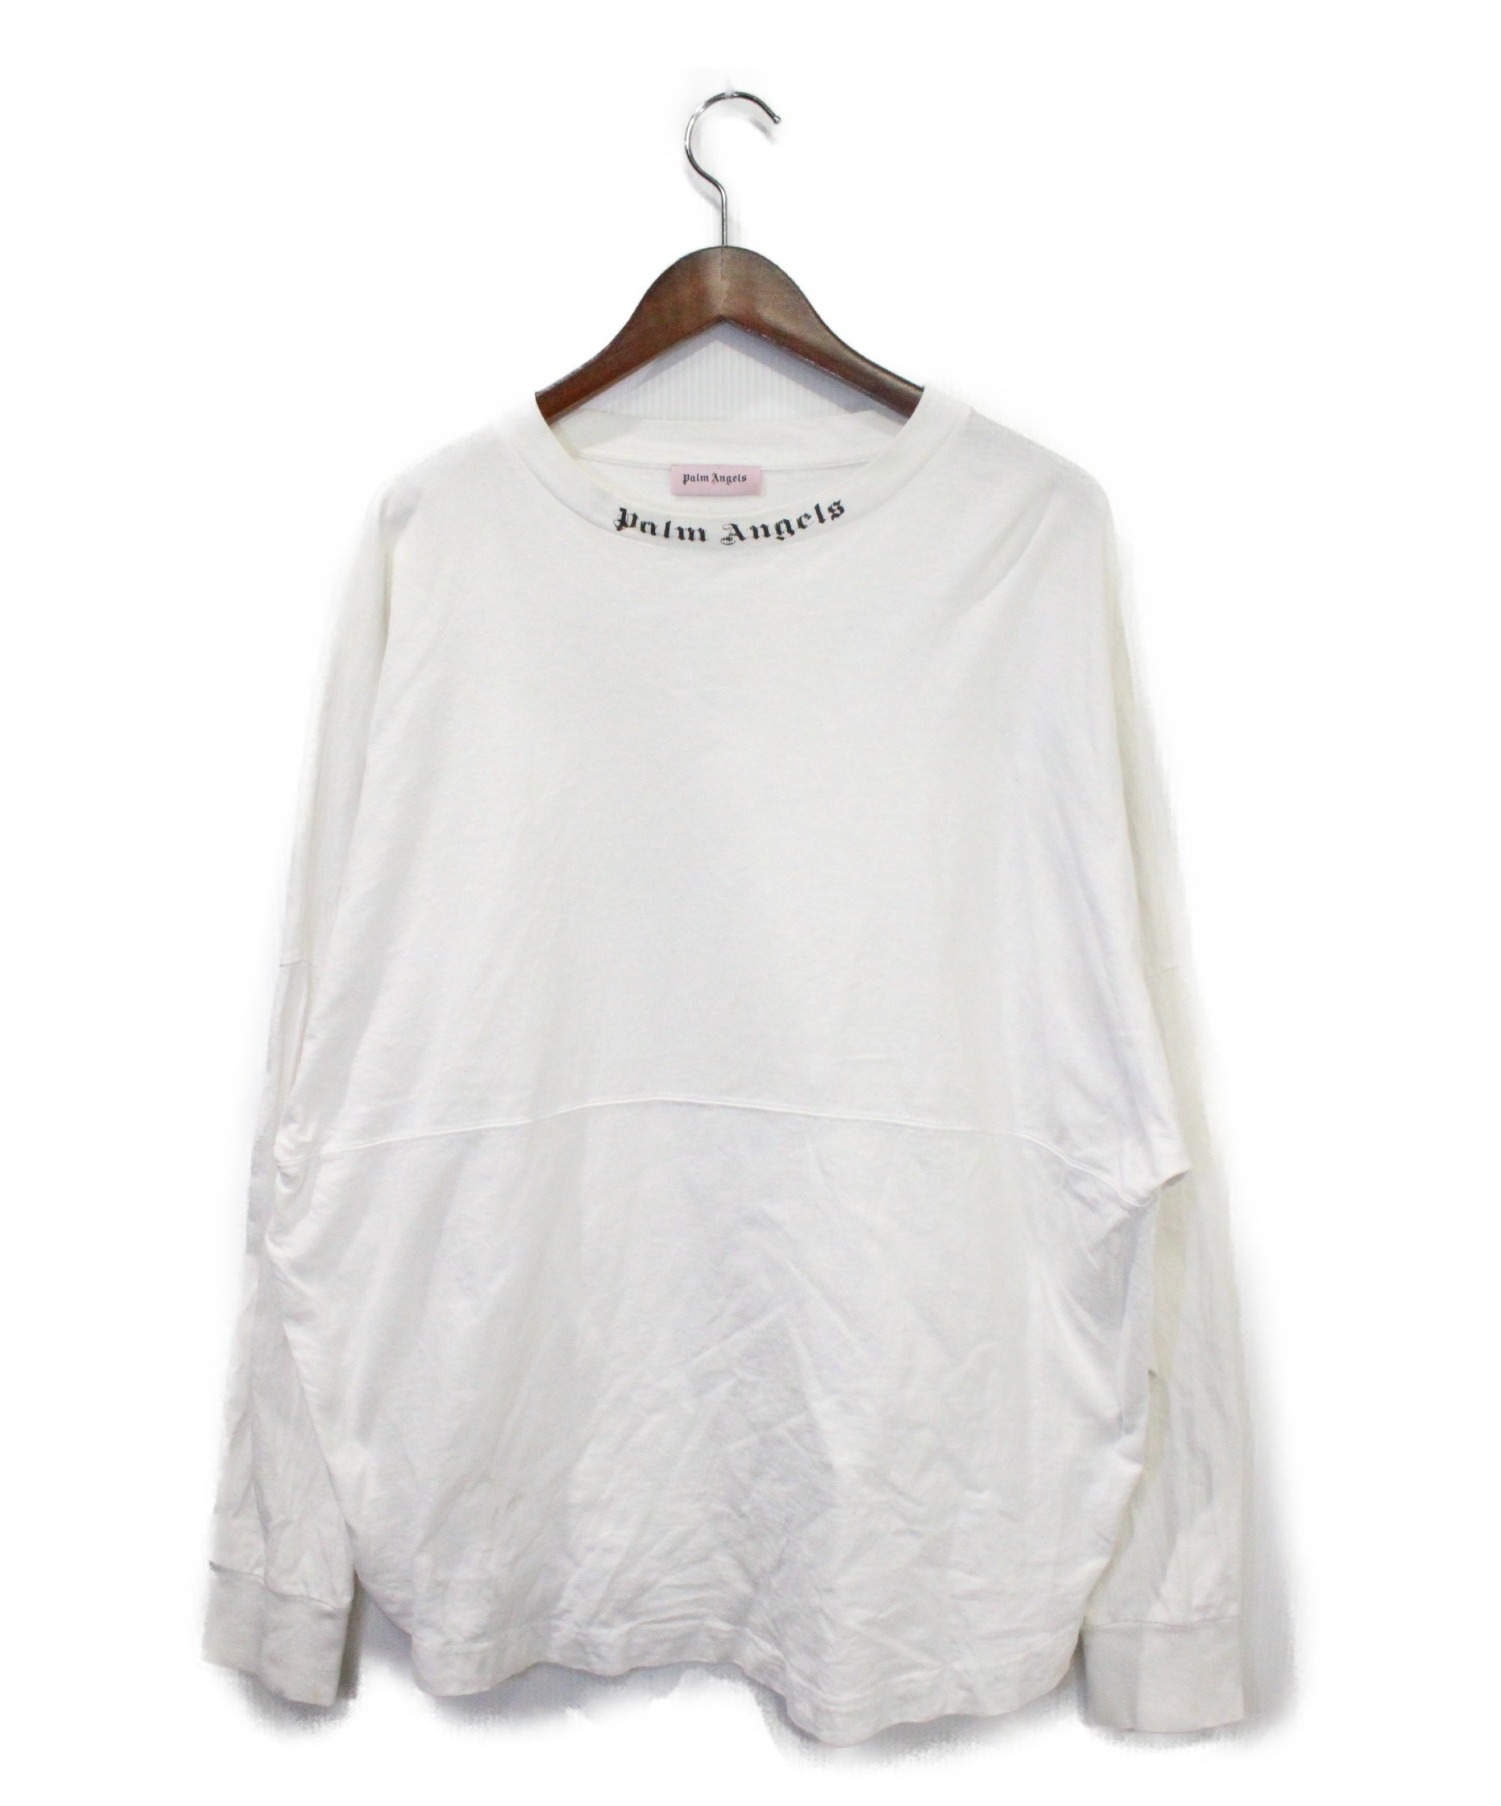 Palm Angels (パーム エンジェルス) バックロゴ長袖Tシャツ ホワイト サイズ:L